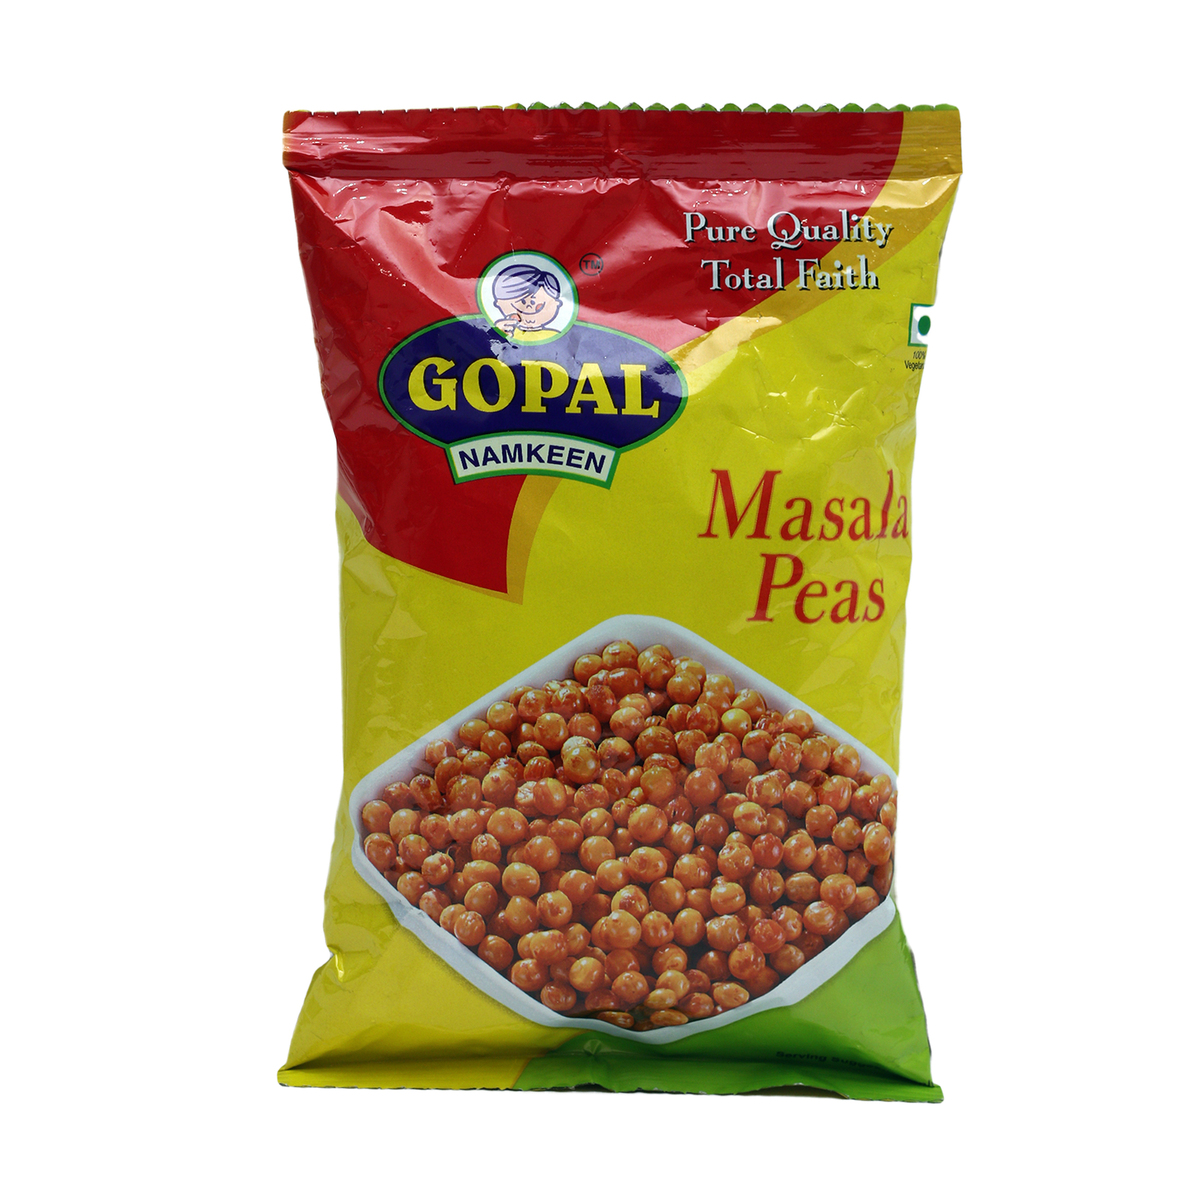 Gopal Masala Peas 85g